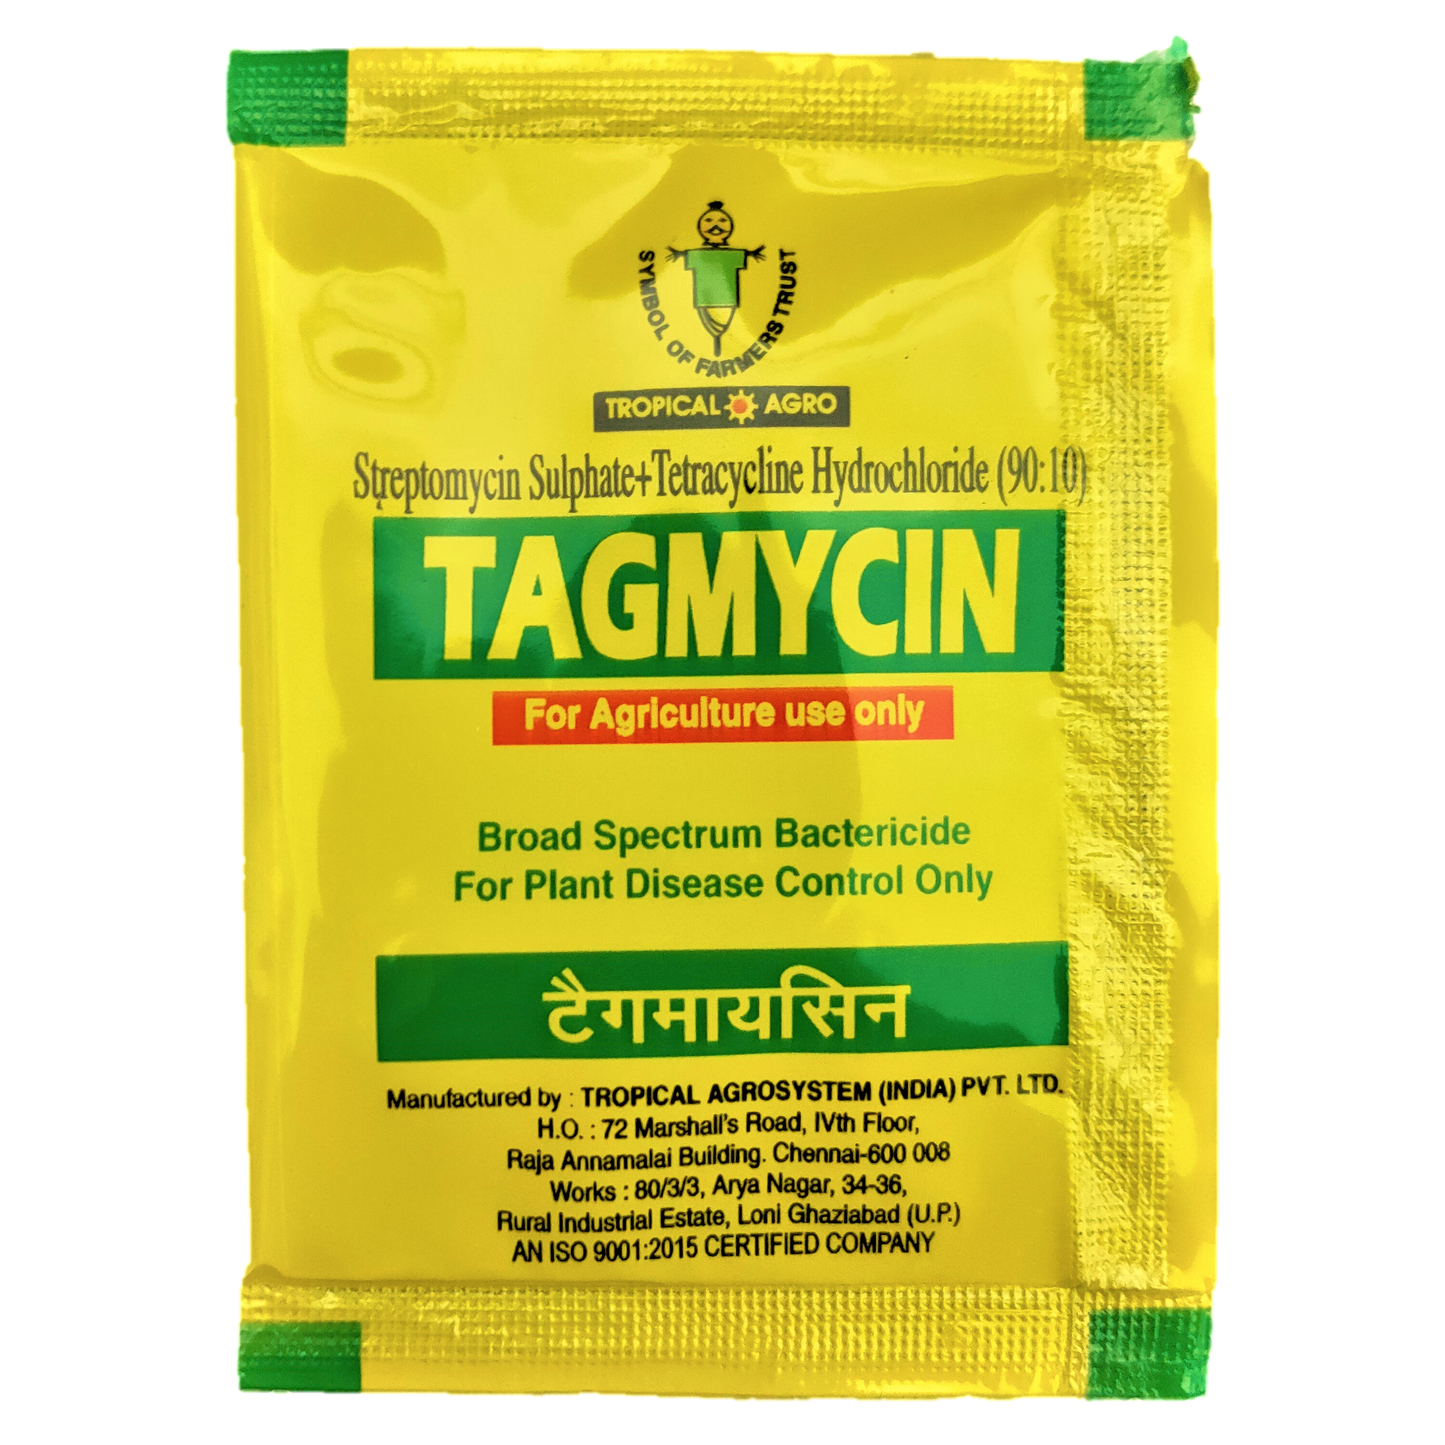 Tagmycin